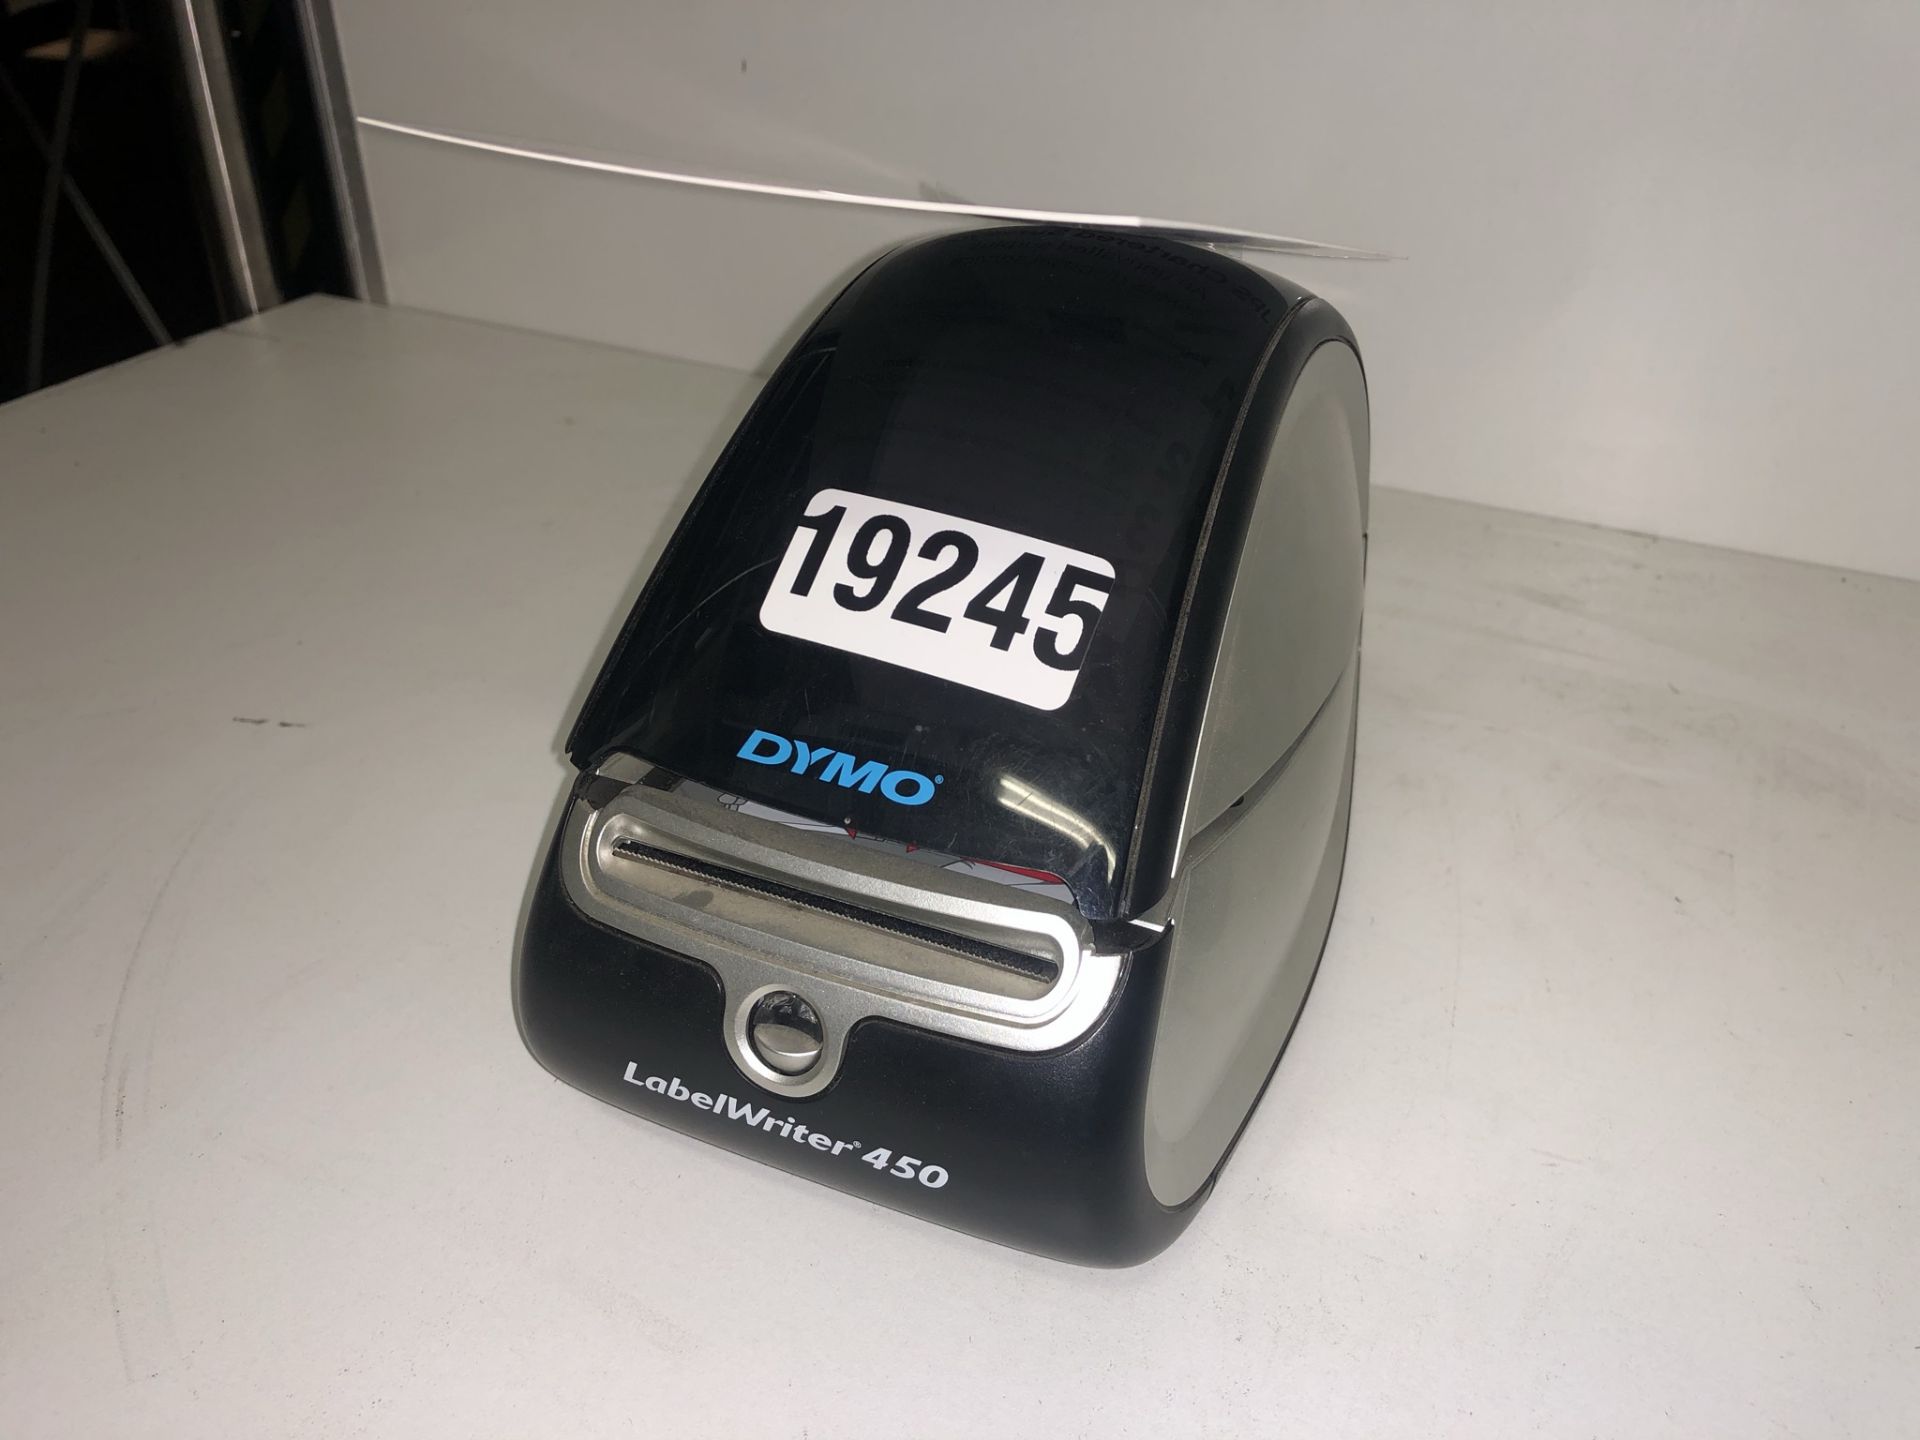 Dymo LabelWriter 4500 Printer - Image 2 of 3